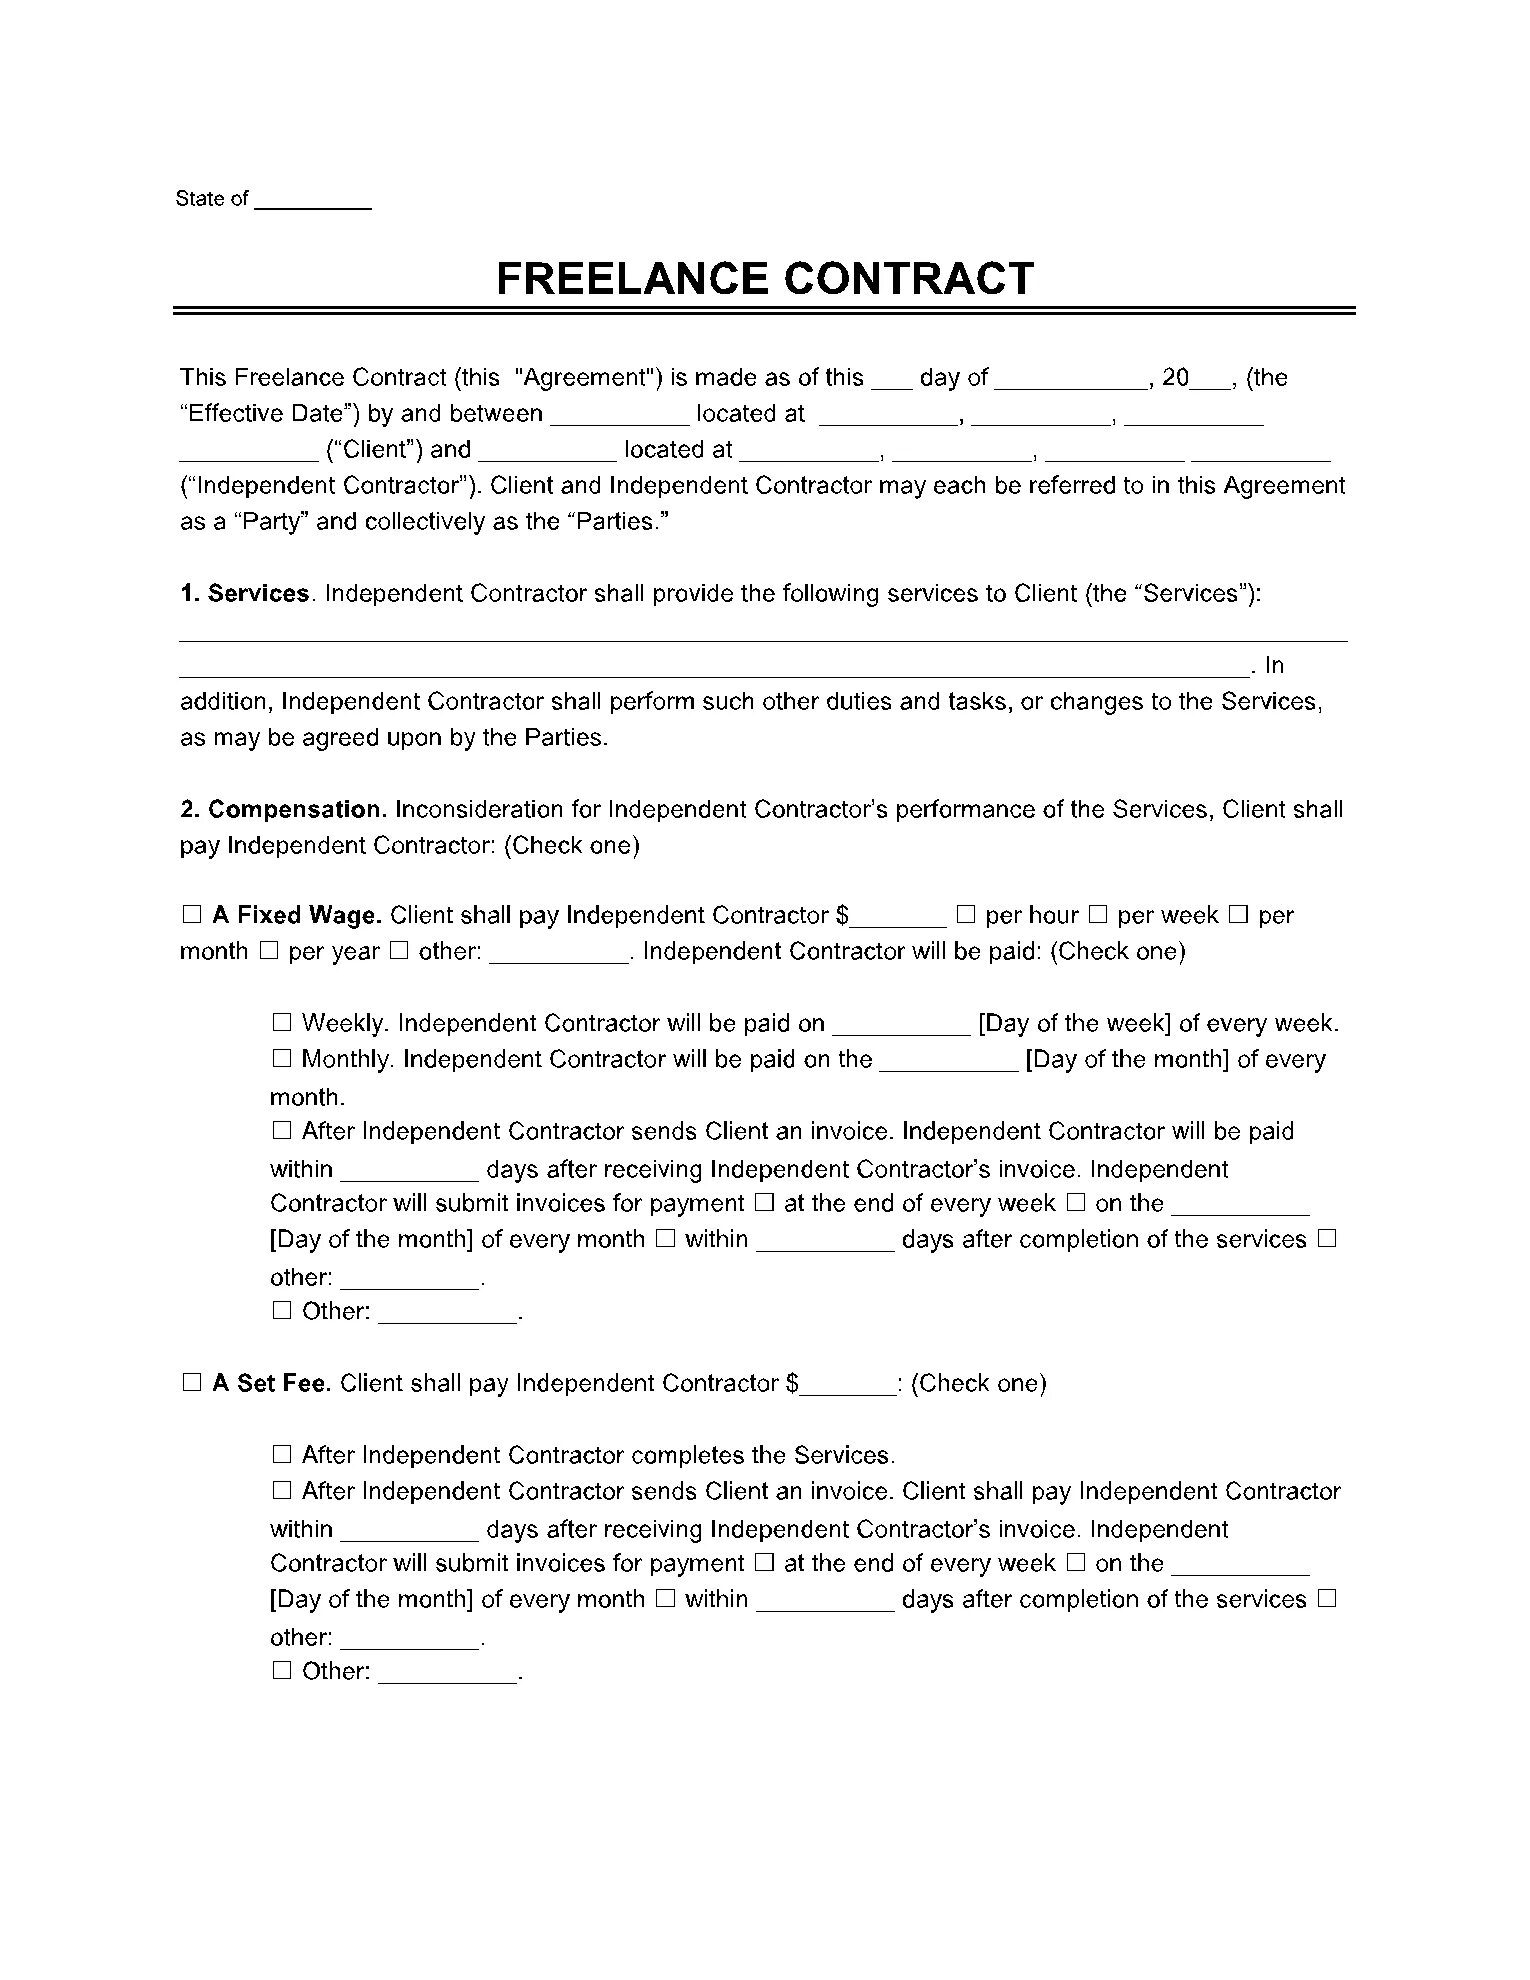 Freelance Contract. Контракт фрилансера. Freelance Contract Generator.